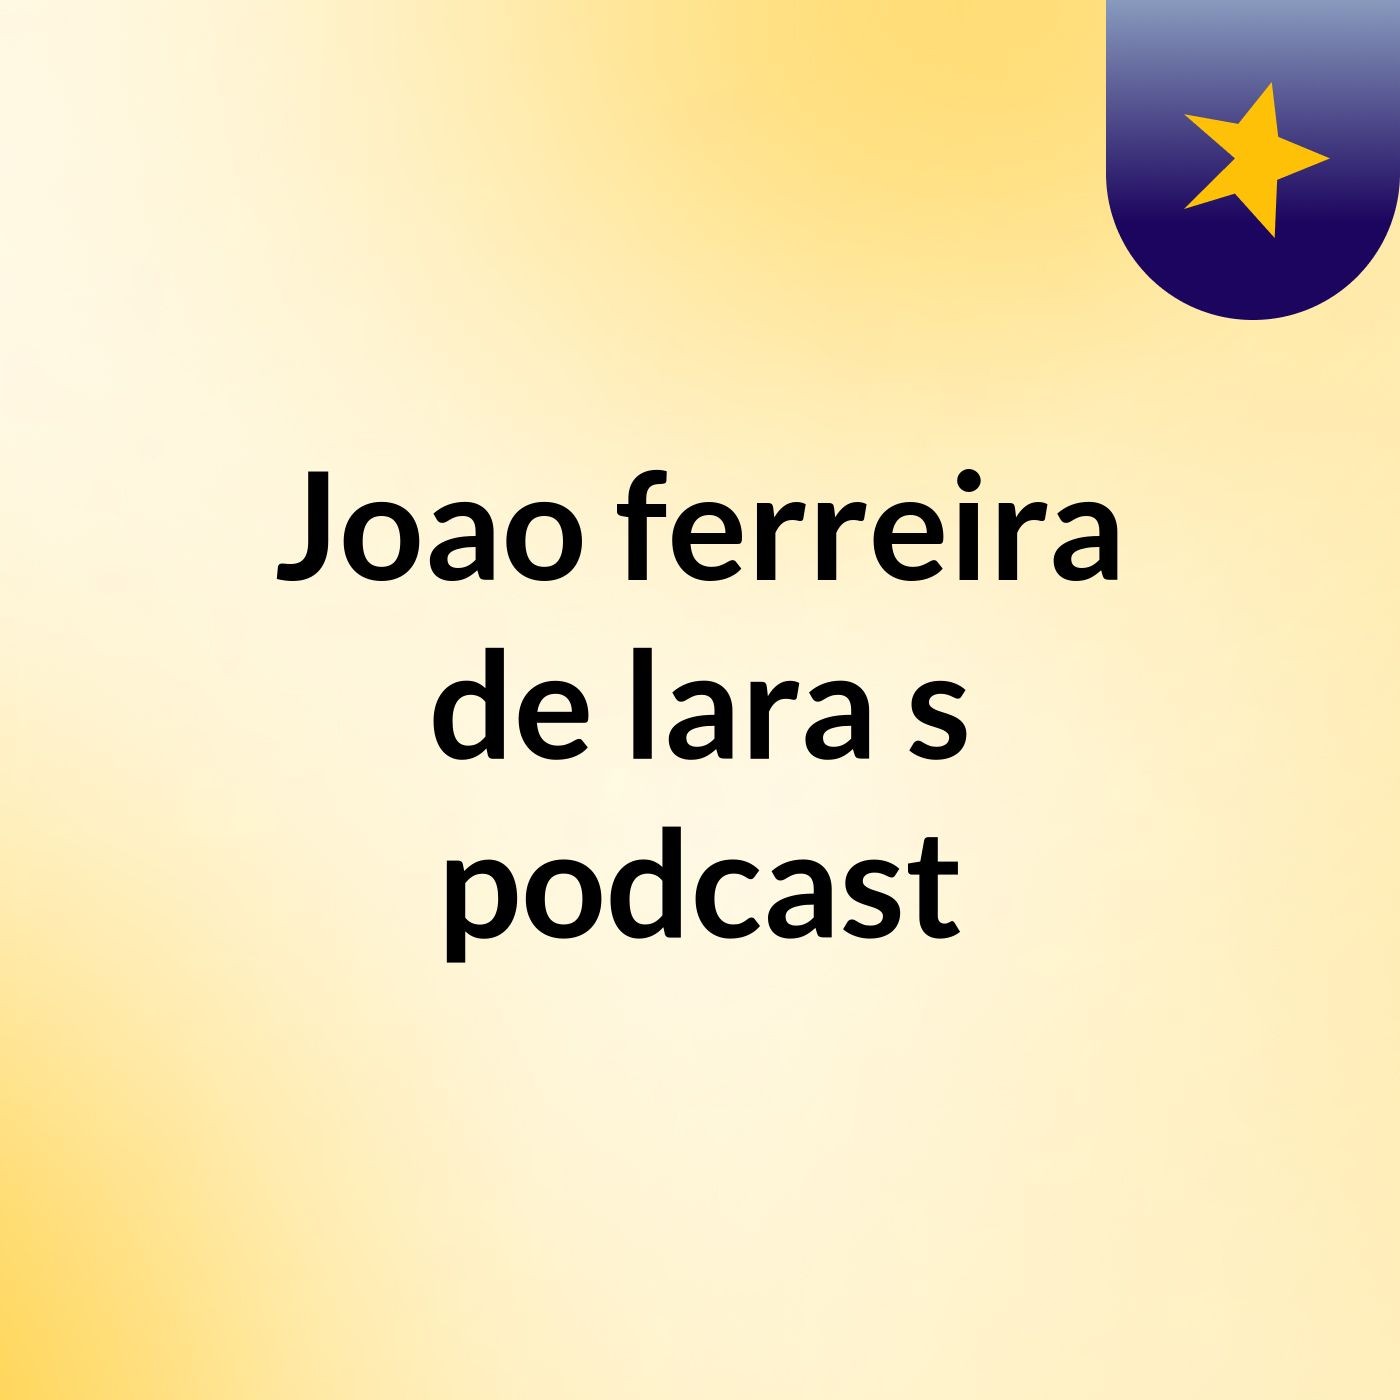 Joao ferreira de lara's podcast